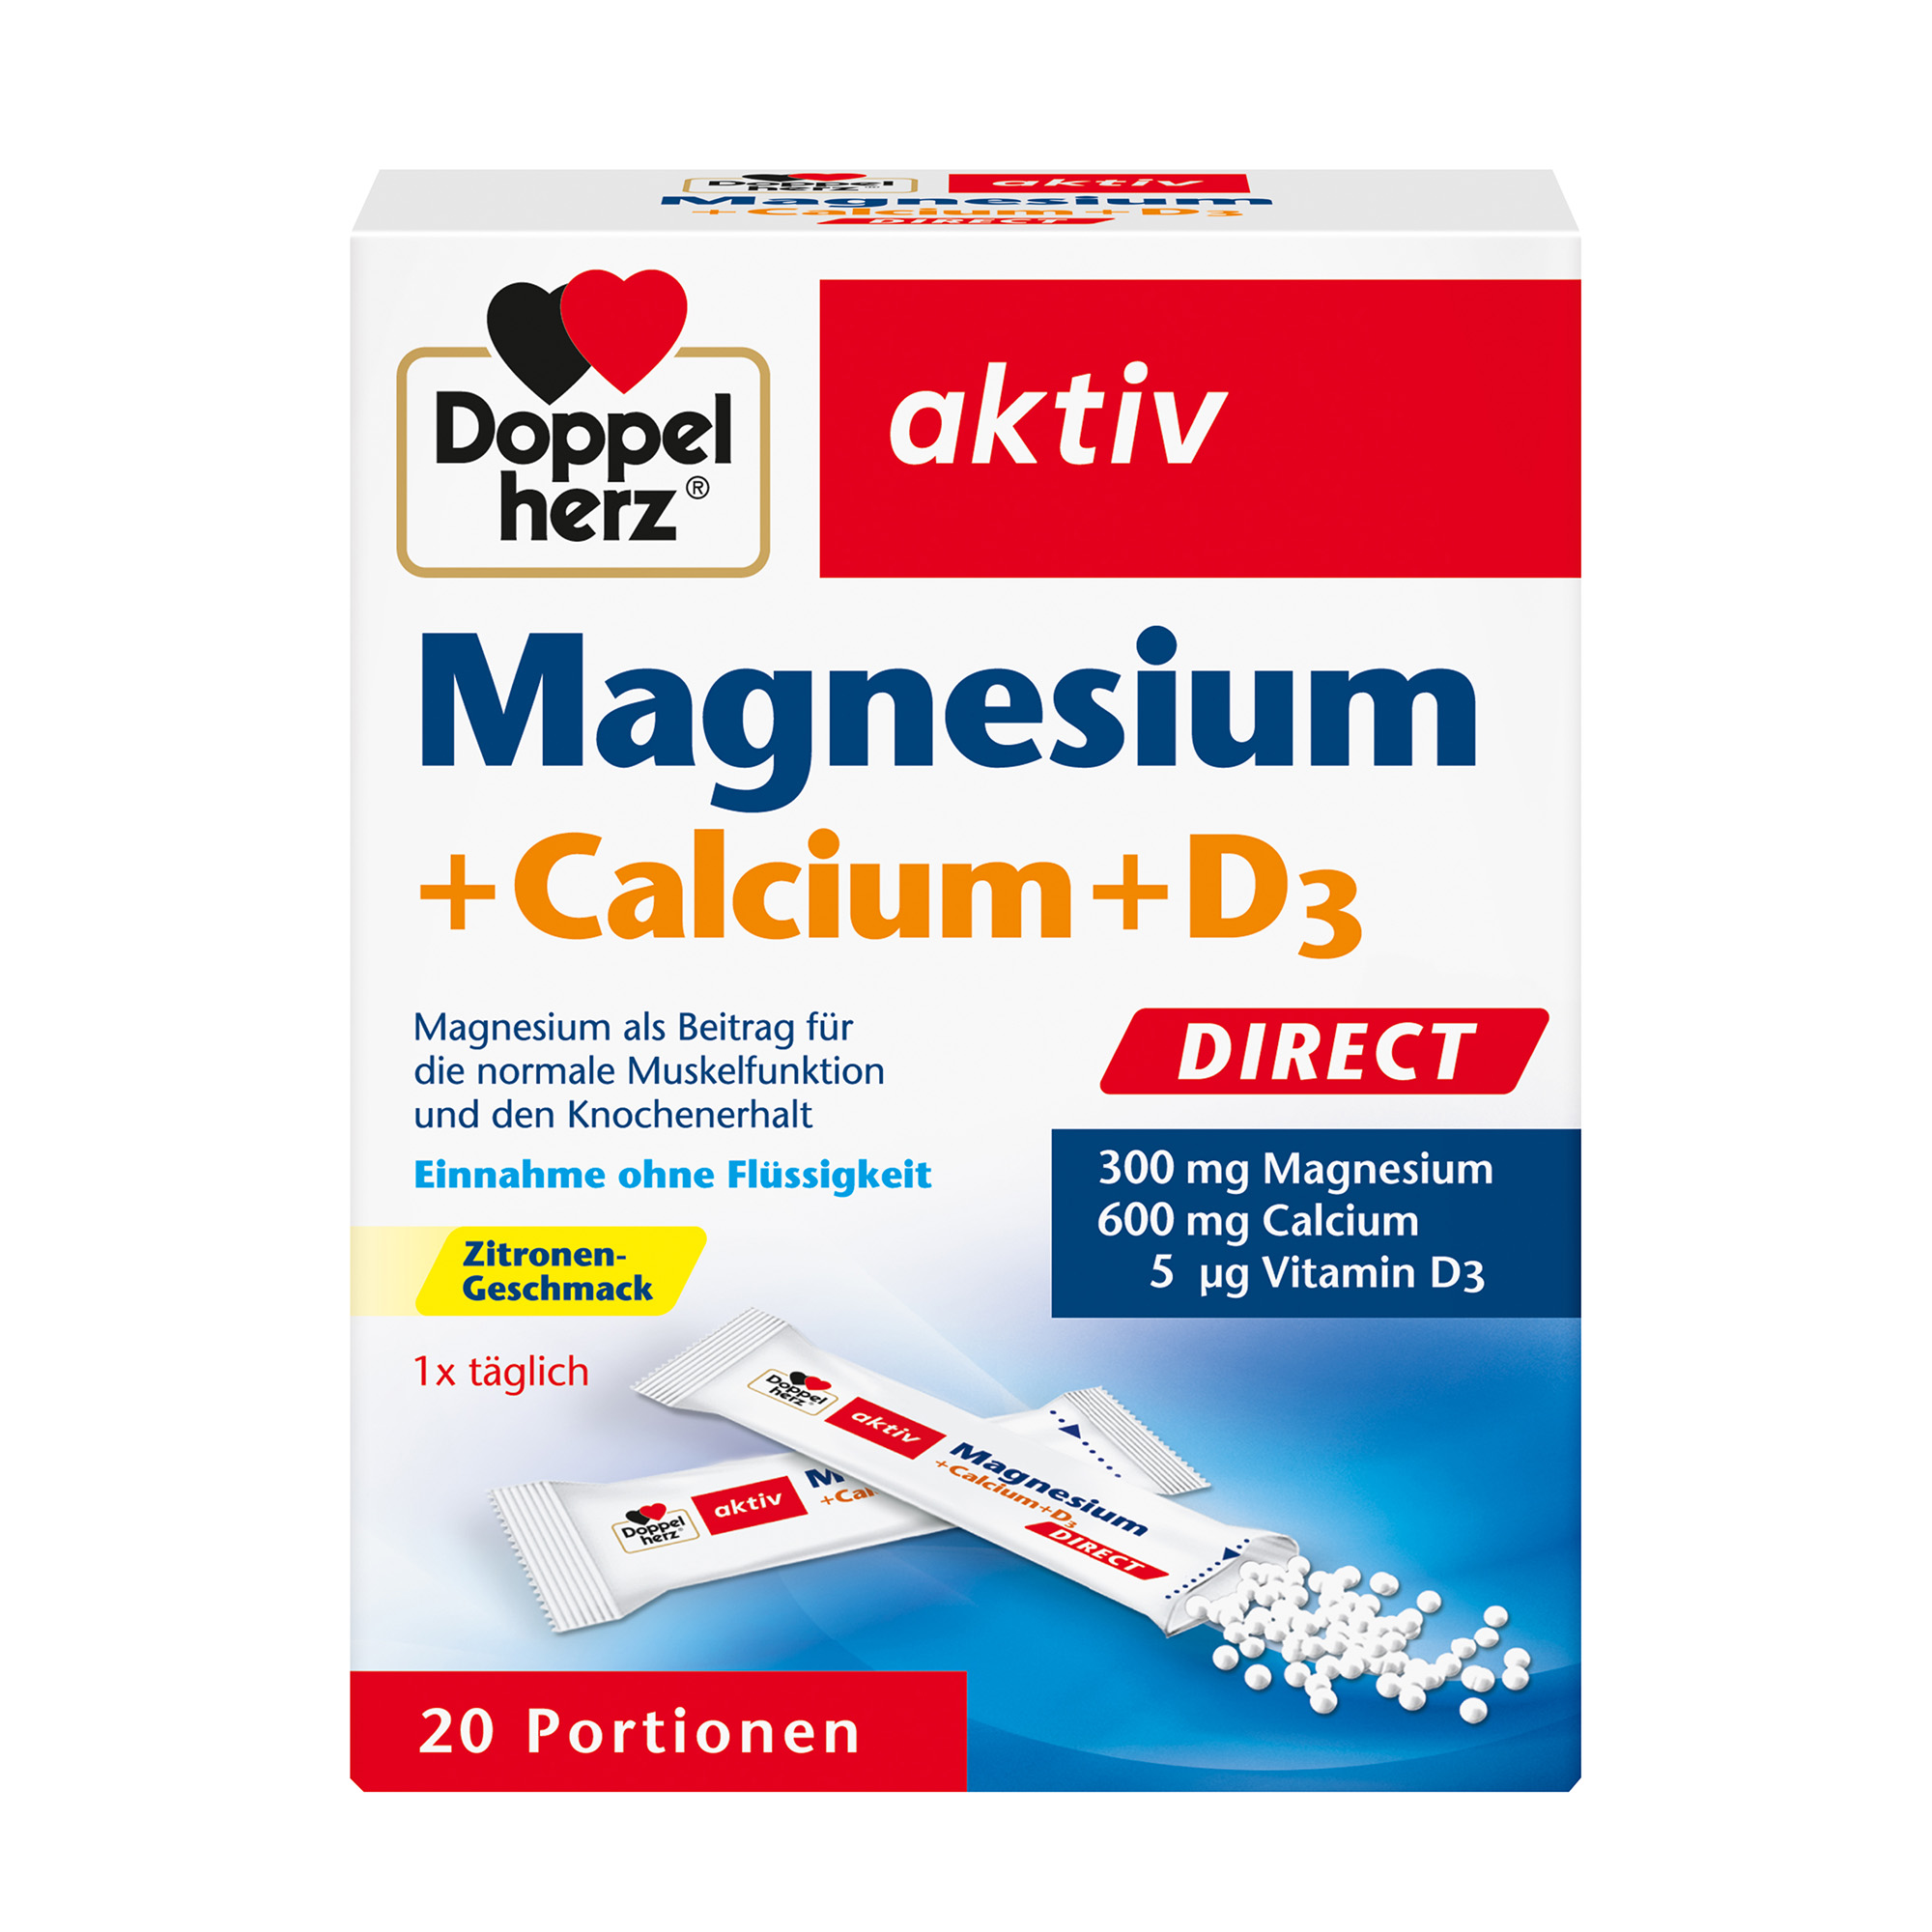 Doppelherz aktiv Magnesium + Calcium + Vitamin D3, 20 Portionen